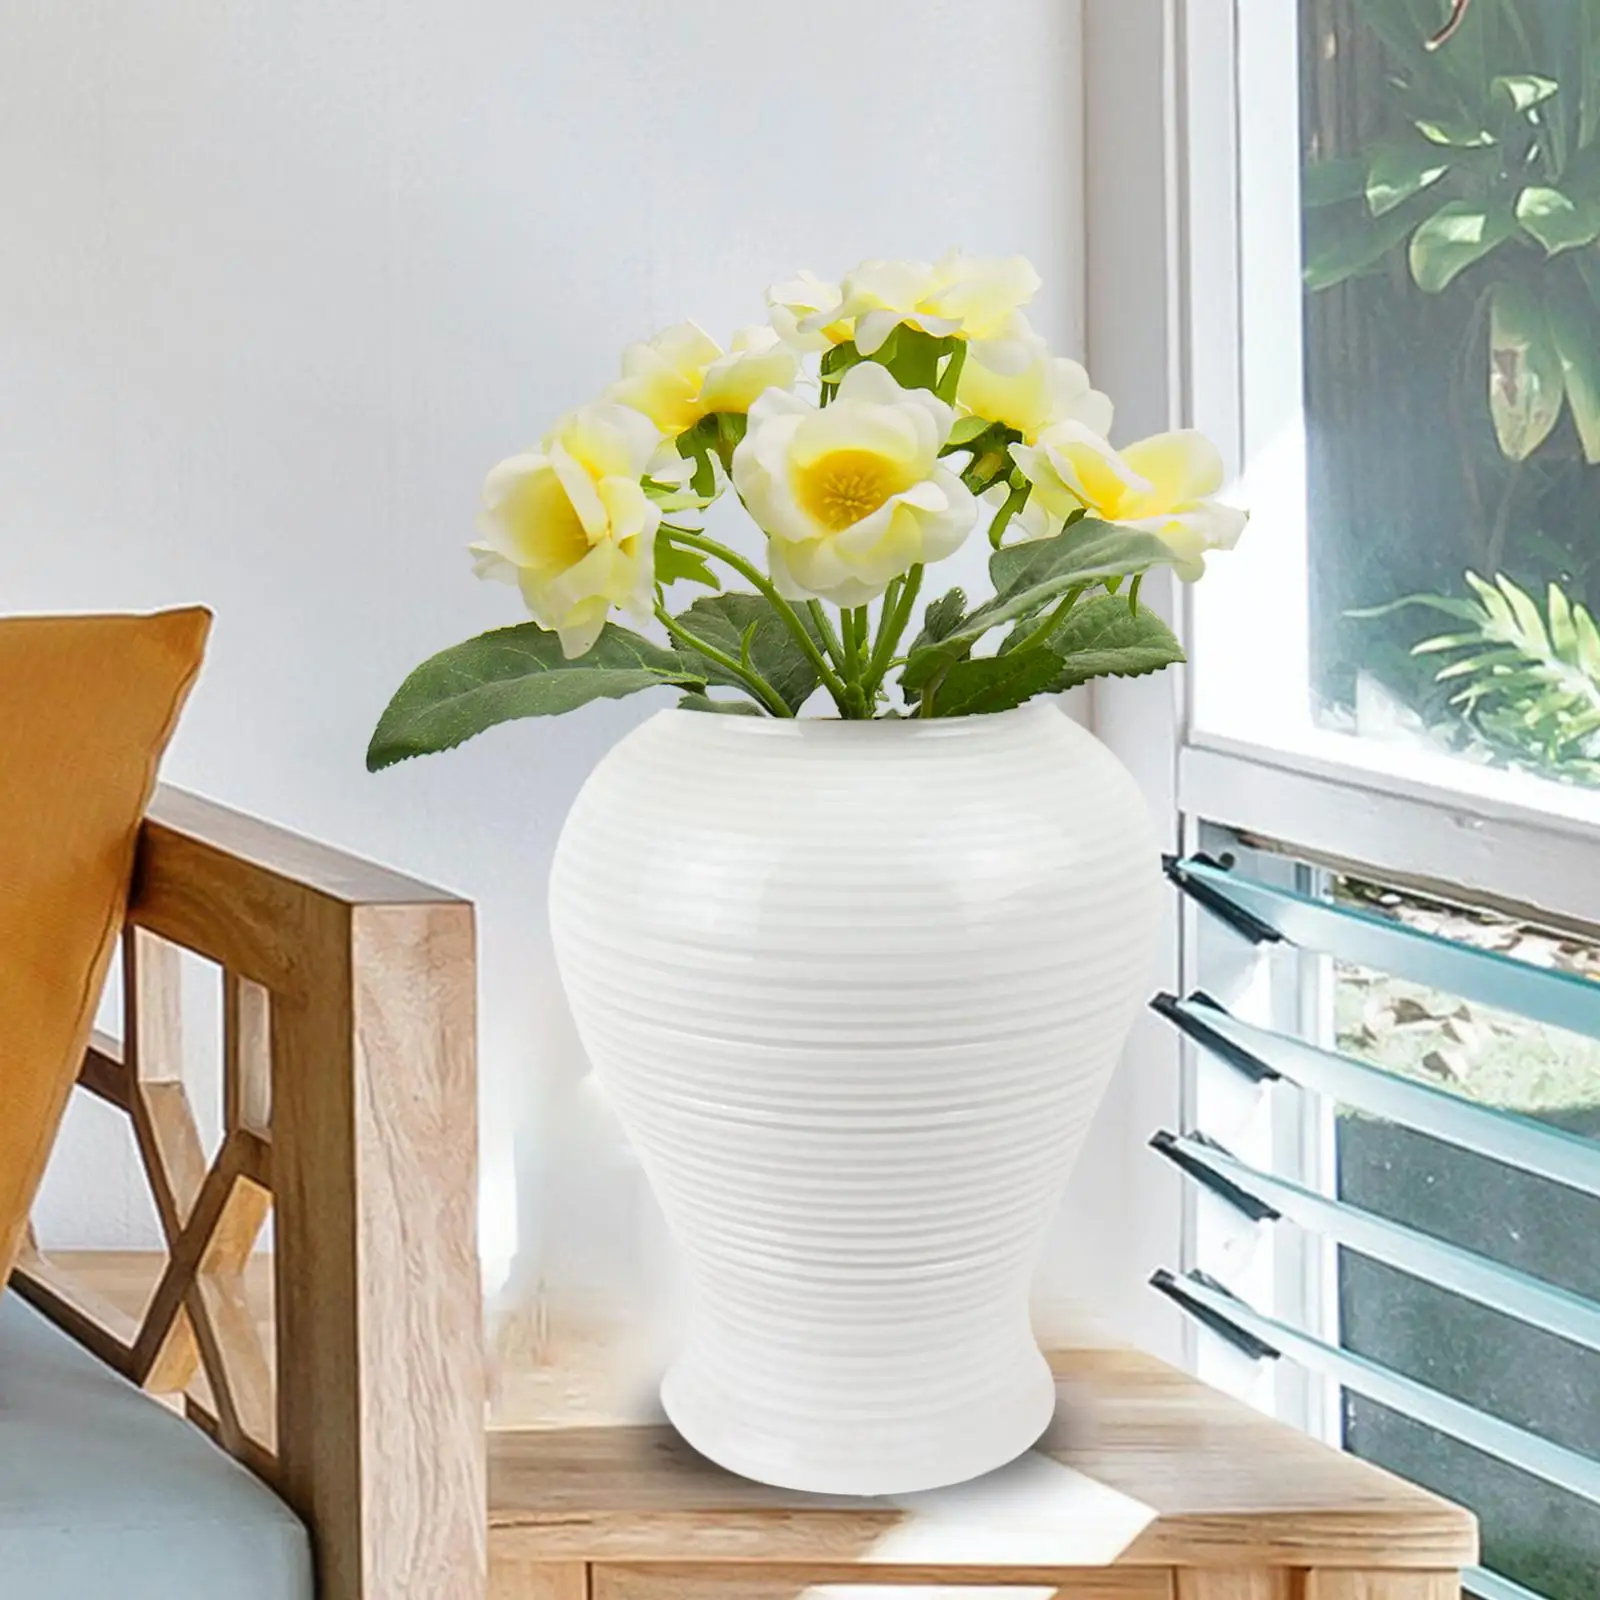 Porcelain Ginger Jar Flower Holder Flower Arrangement Display Ceramic Vase Temple Jar for Home Office Decoration Gift Ornament